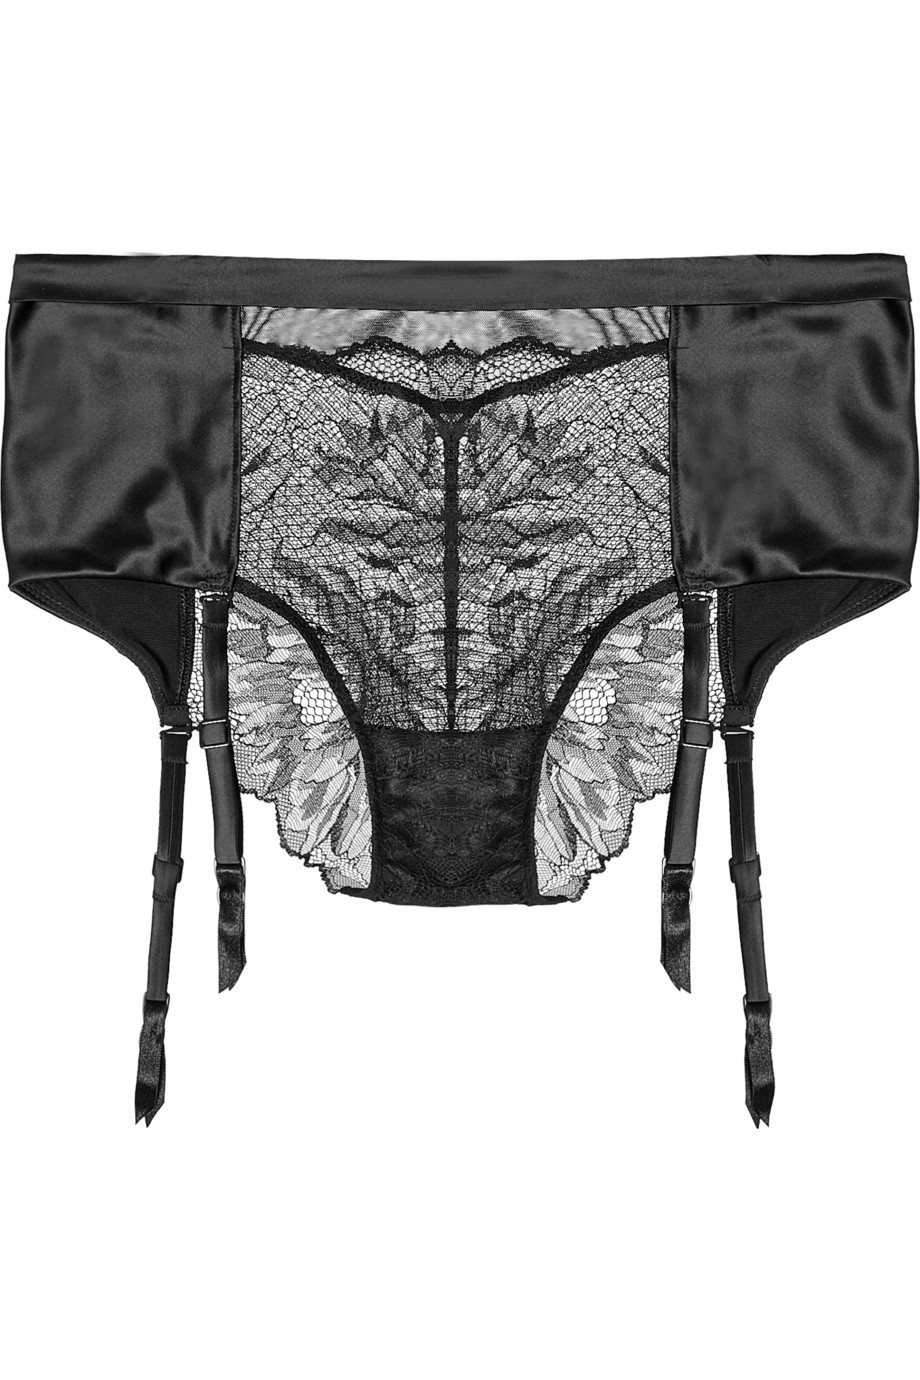 Calvin Klein Black Stretch-lace And Satin Suspender Briefs - Lyst